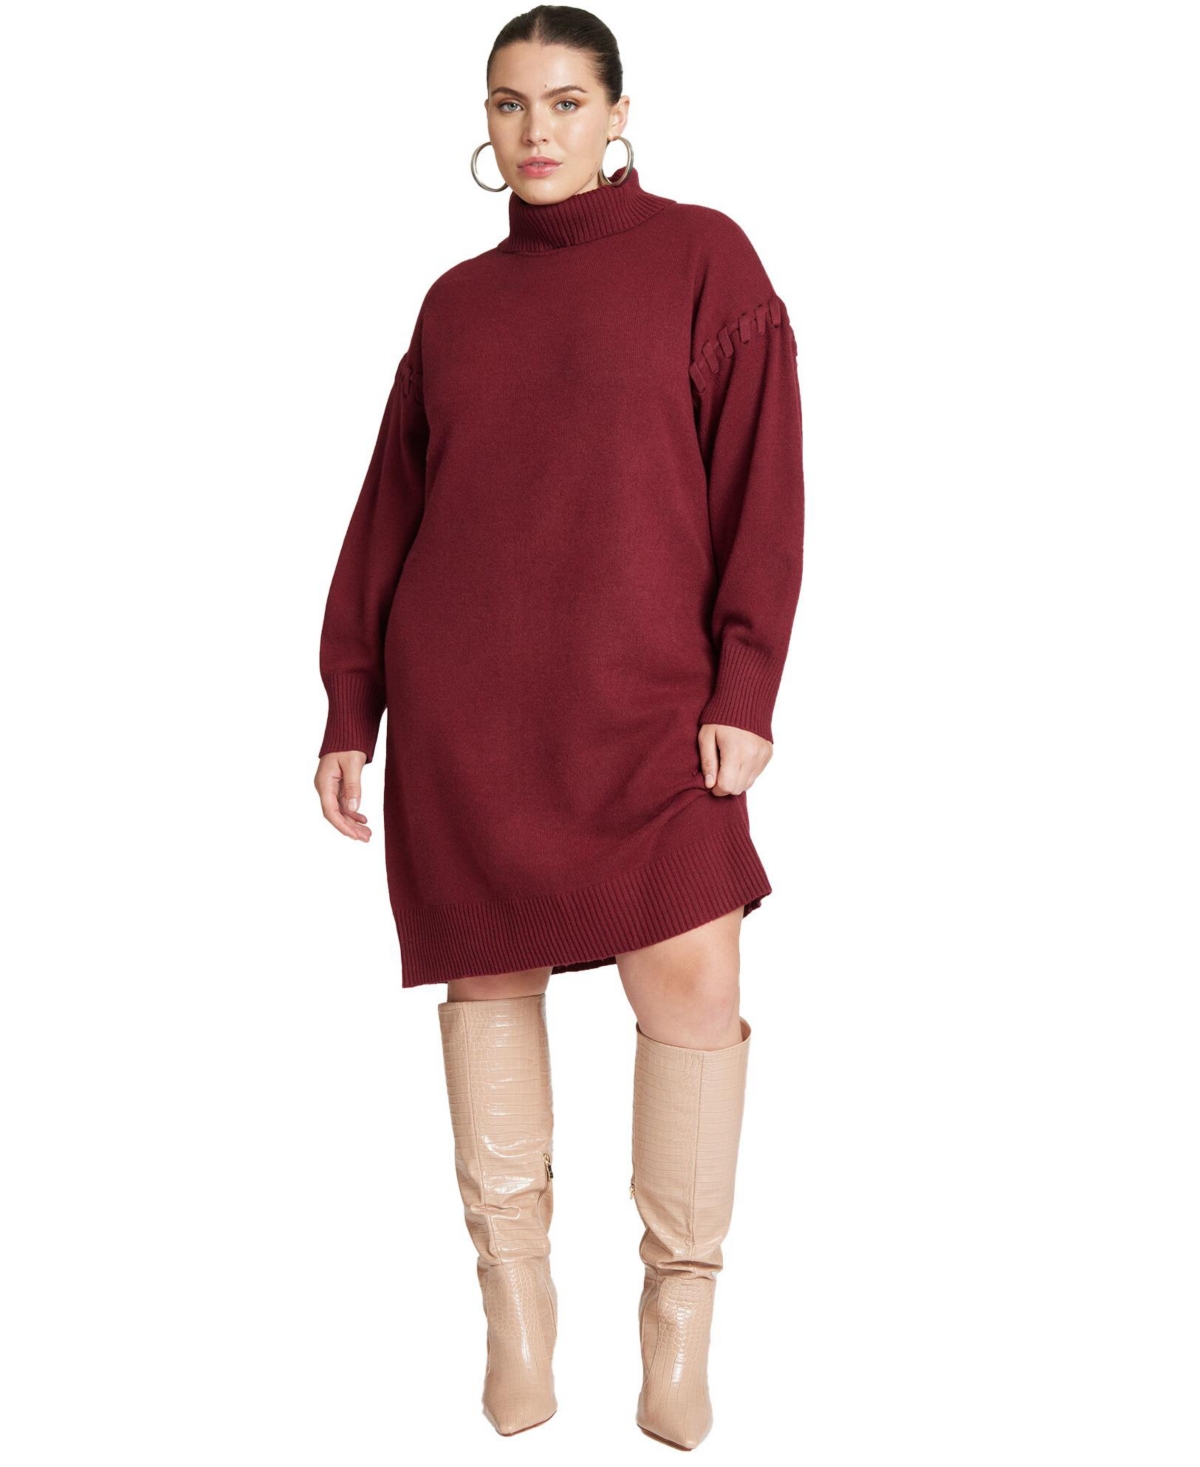 Plus Size Sweater Mini Dress With Lace Detail - Bordeaux